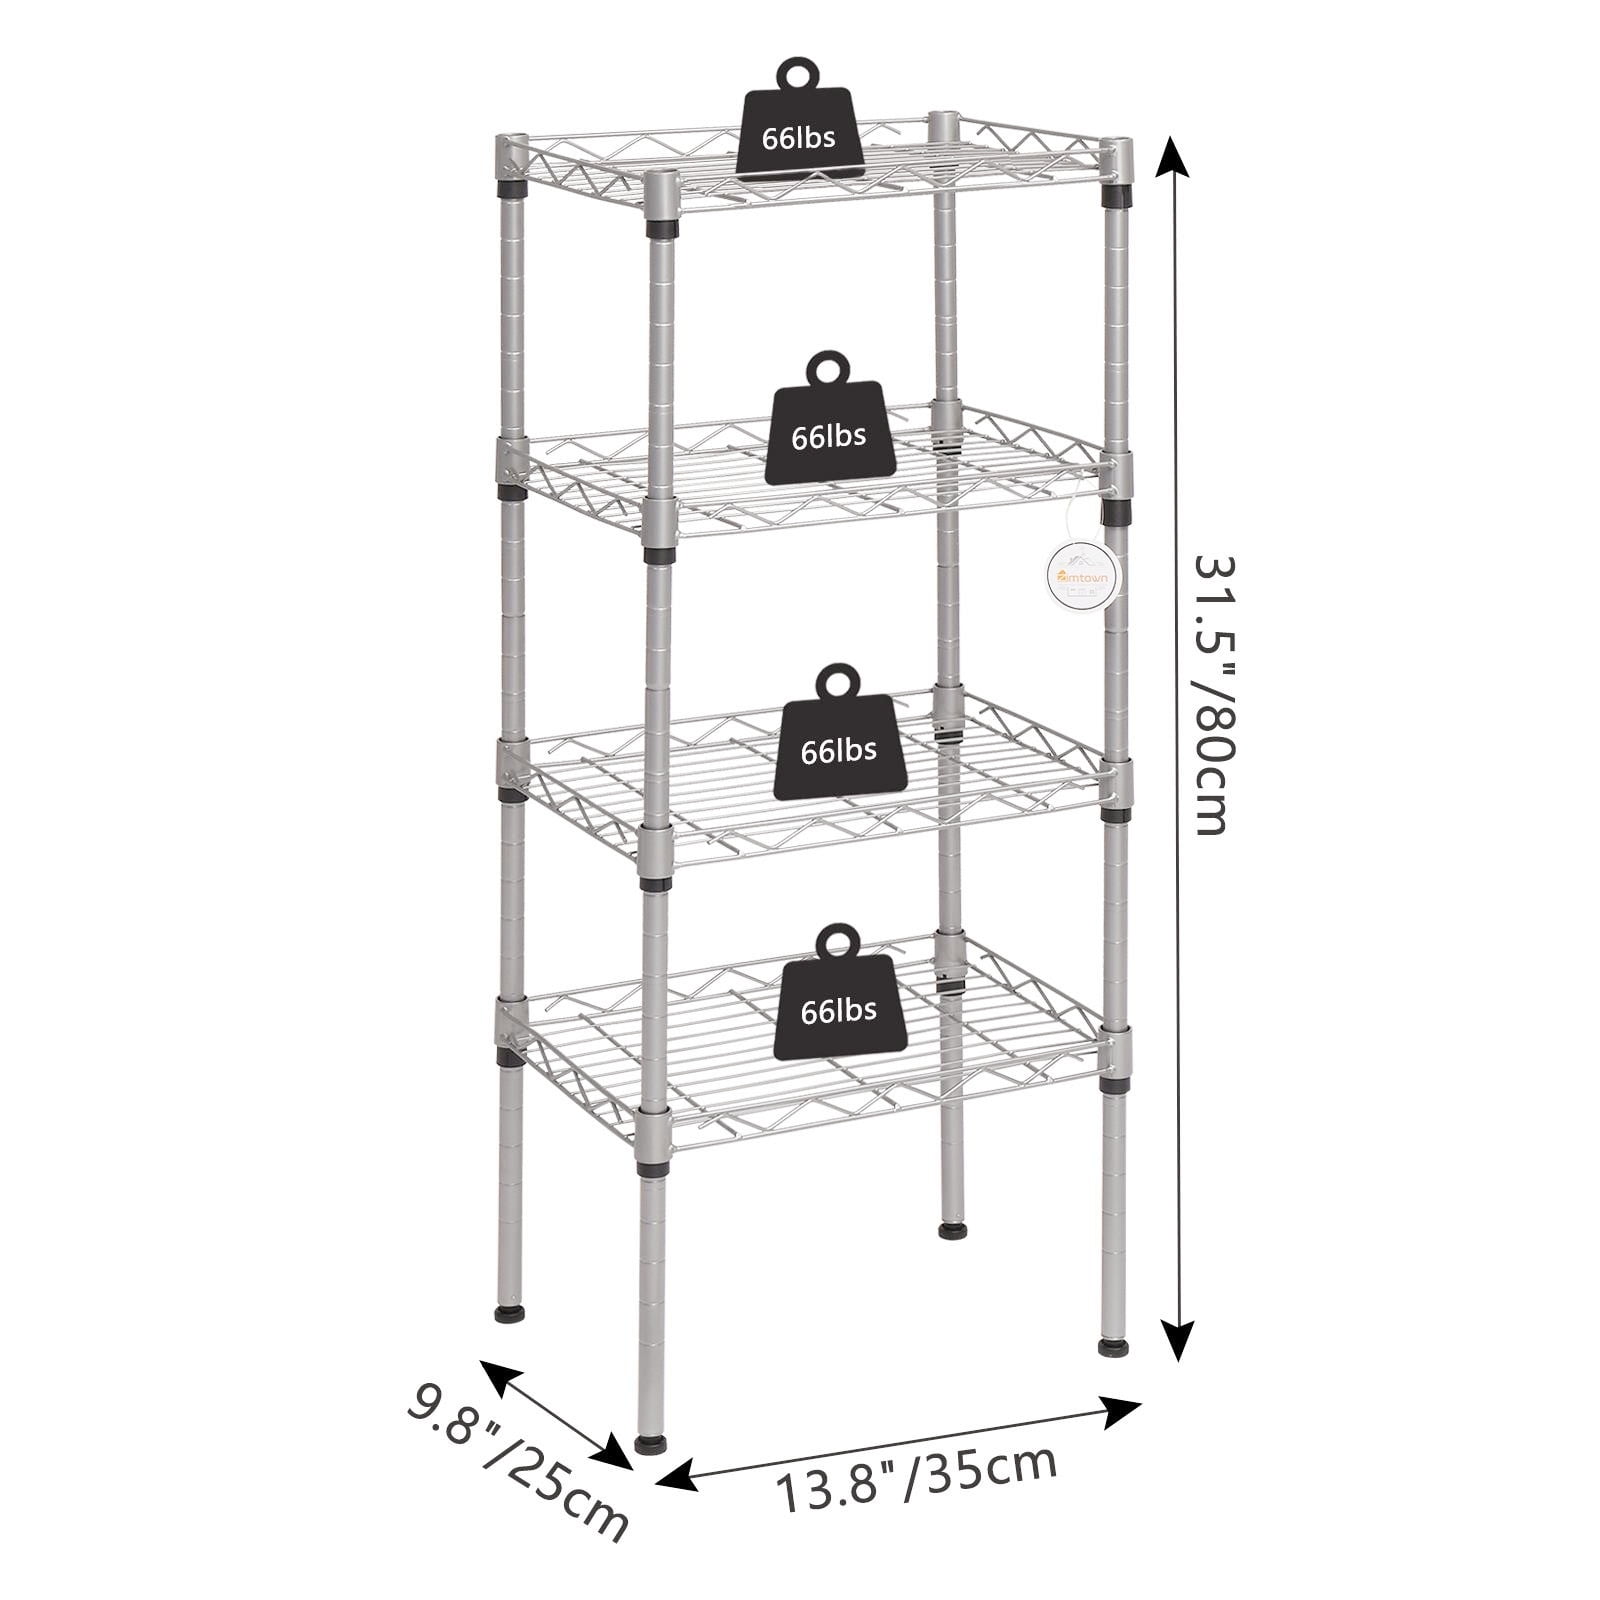 Winado 4-Tier Steel Freestanding Garage Storage Shelving Unit Black (19.69 in. W x 31.5 in. H x 11.81 in. D)